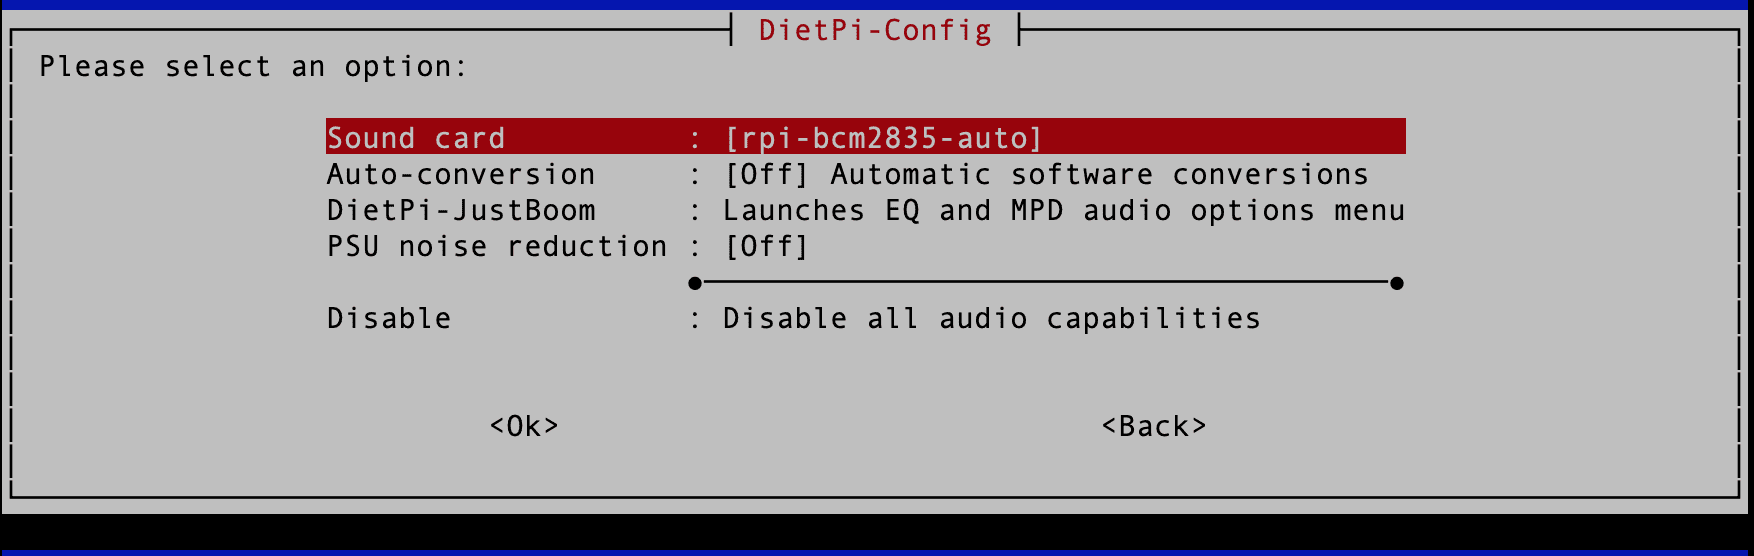 dietpi audio options